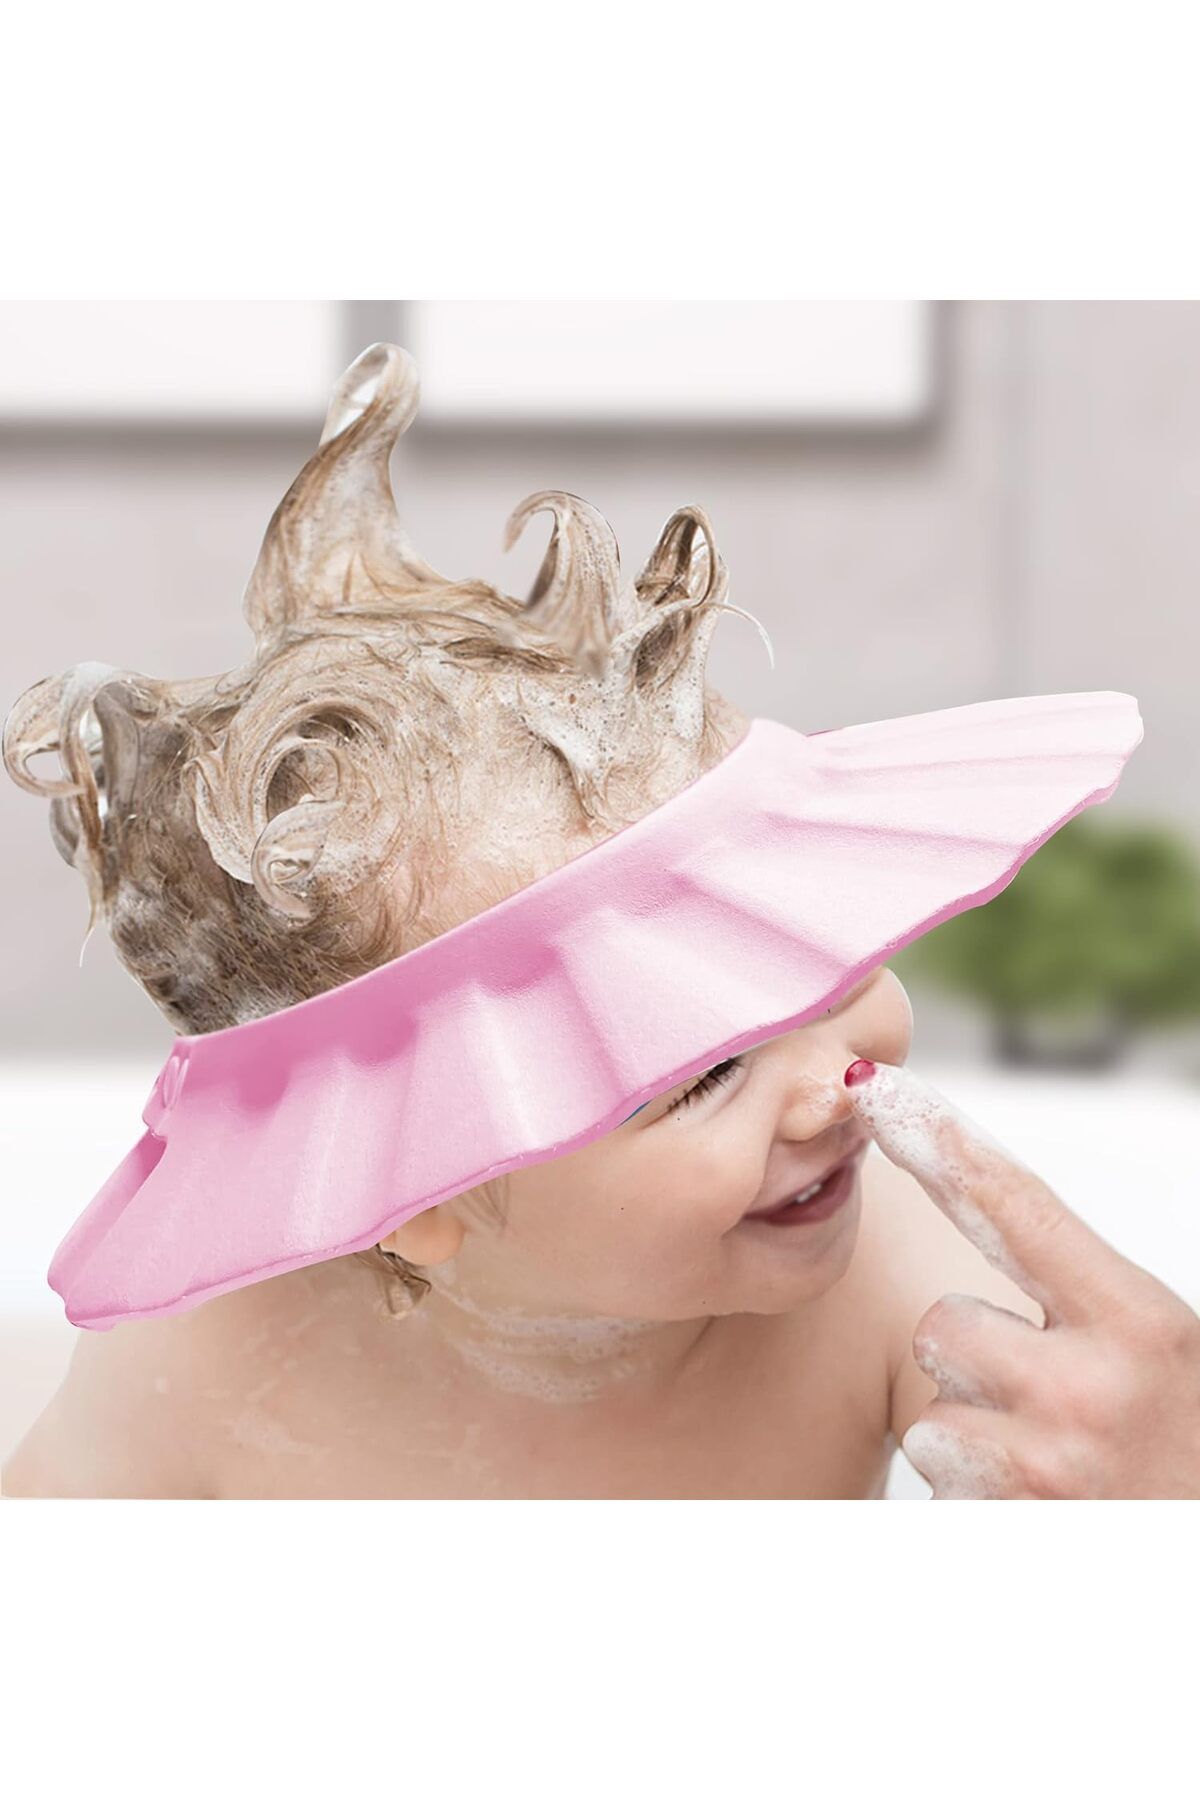 Miningaa Bebek Duş Başlığı, Bebek Güneş Şapkası Göz, Ağız Ve Kulaklara Su Kaçmasını Önleyeci Pembe Şapka